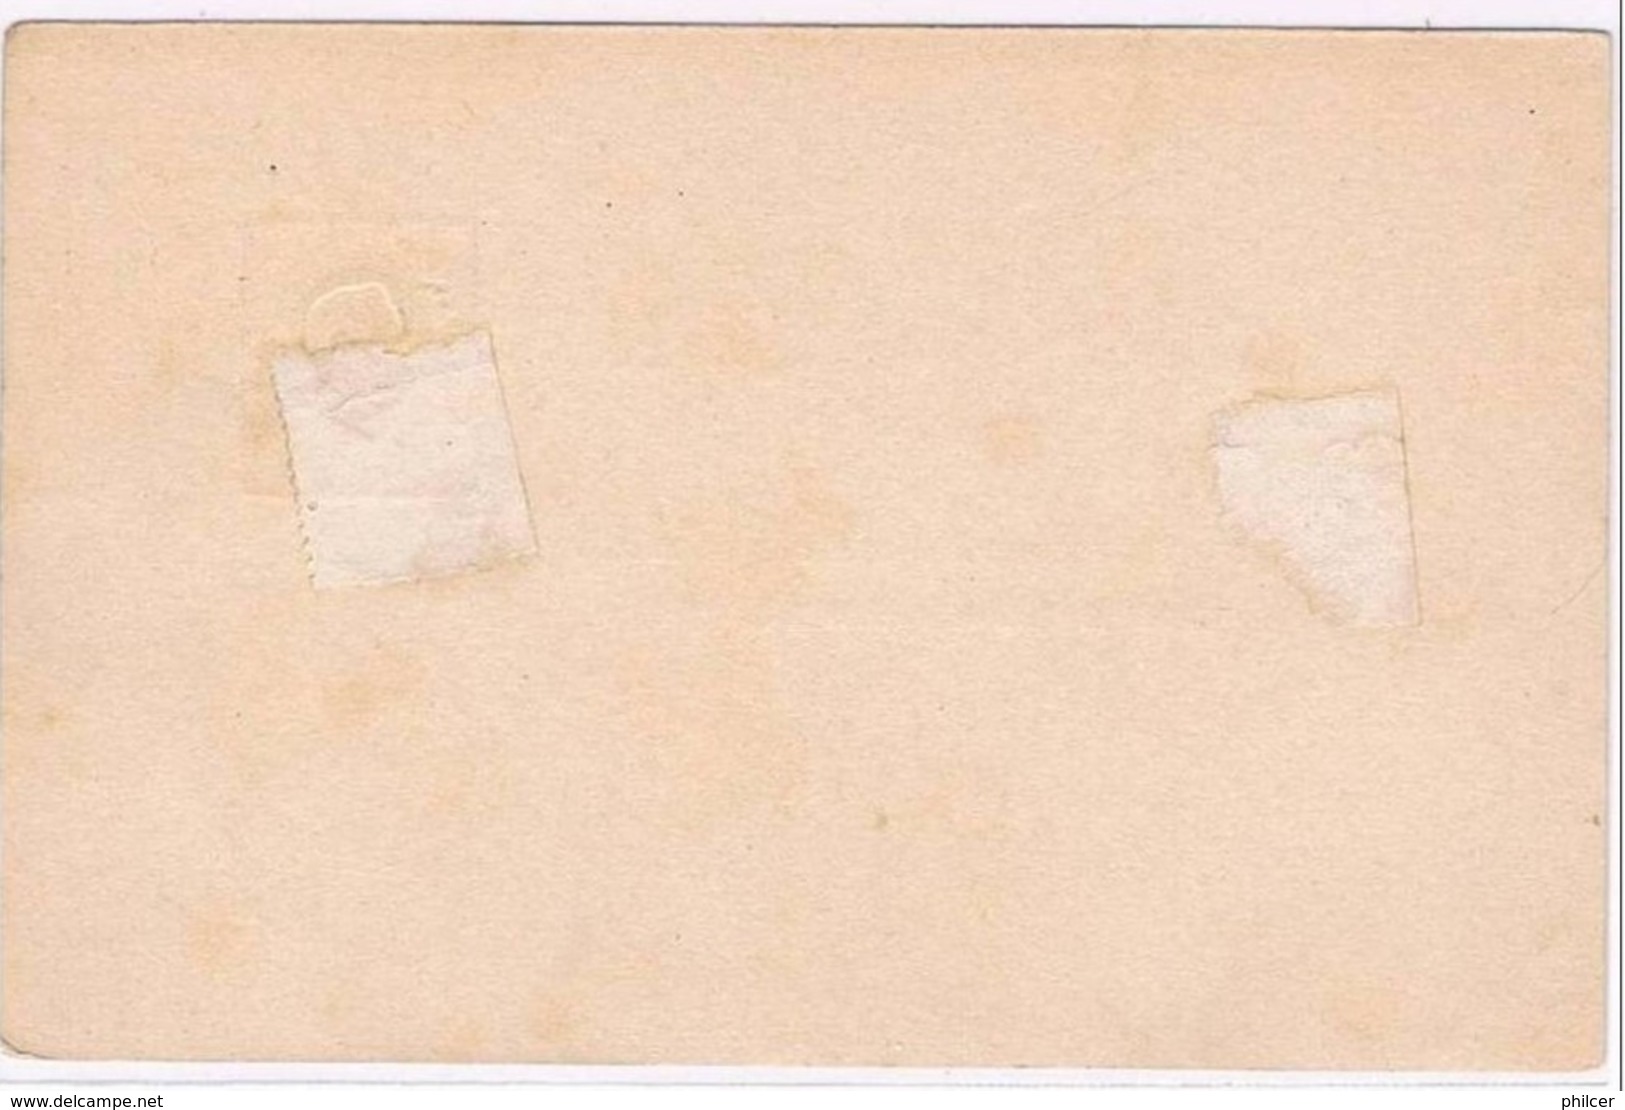 Portugal, 1880/1, # 7, Bilhete Postal - Ongebruikt